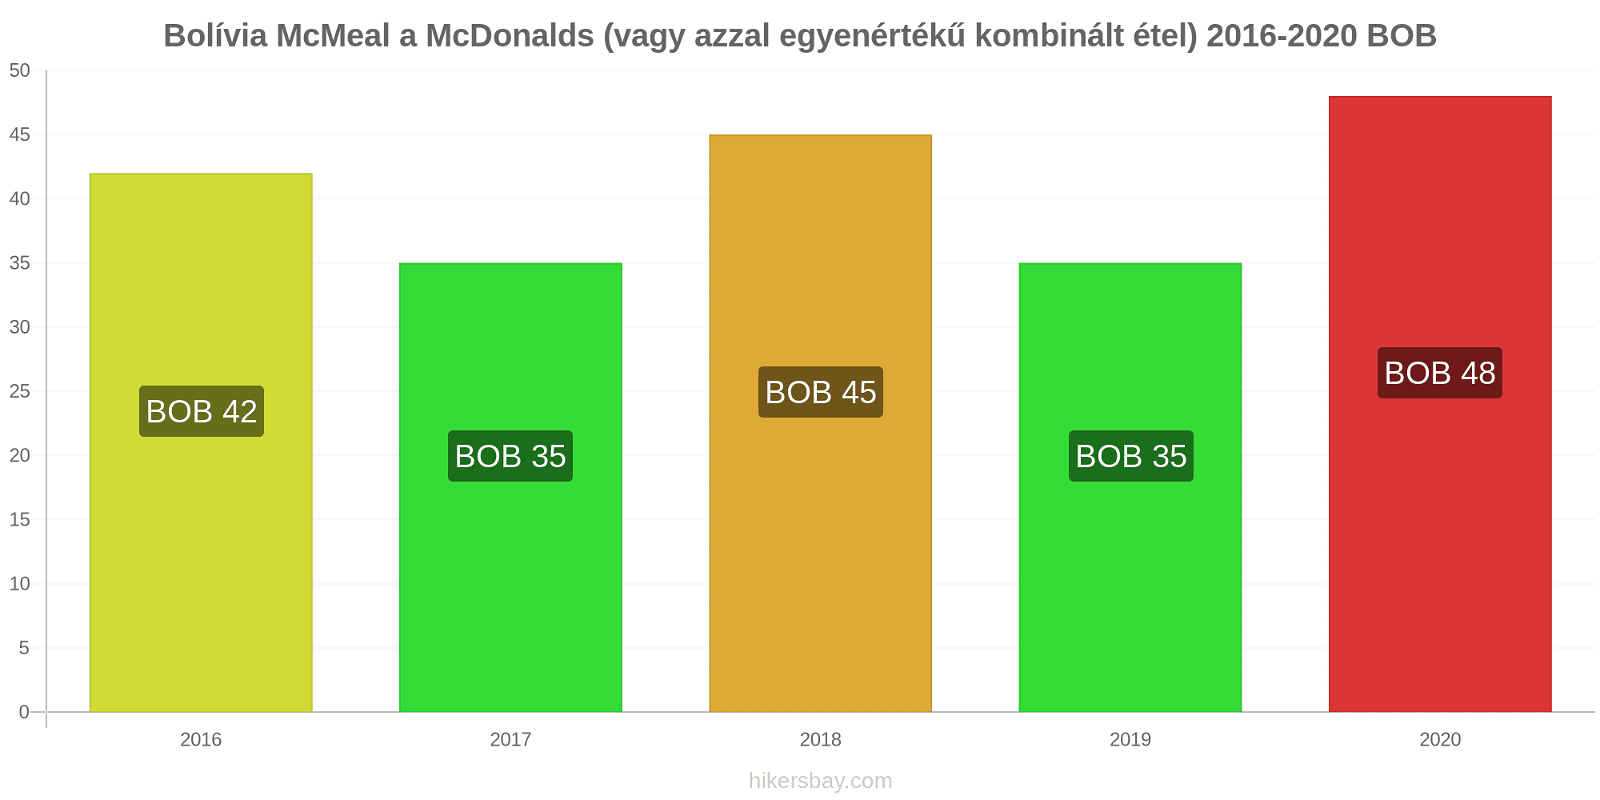 Bolívia árváltozások McMeal a McDonalds (vagy azzal egyenértékű kombinált étel) hikersbay.com